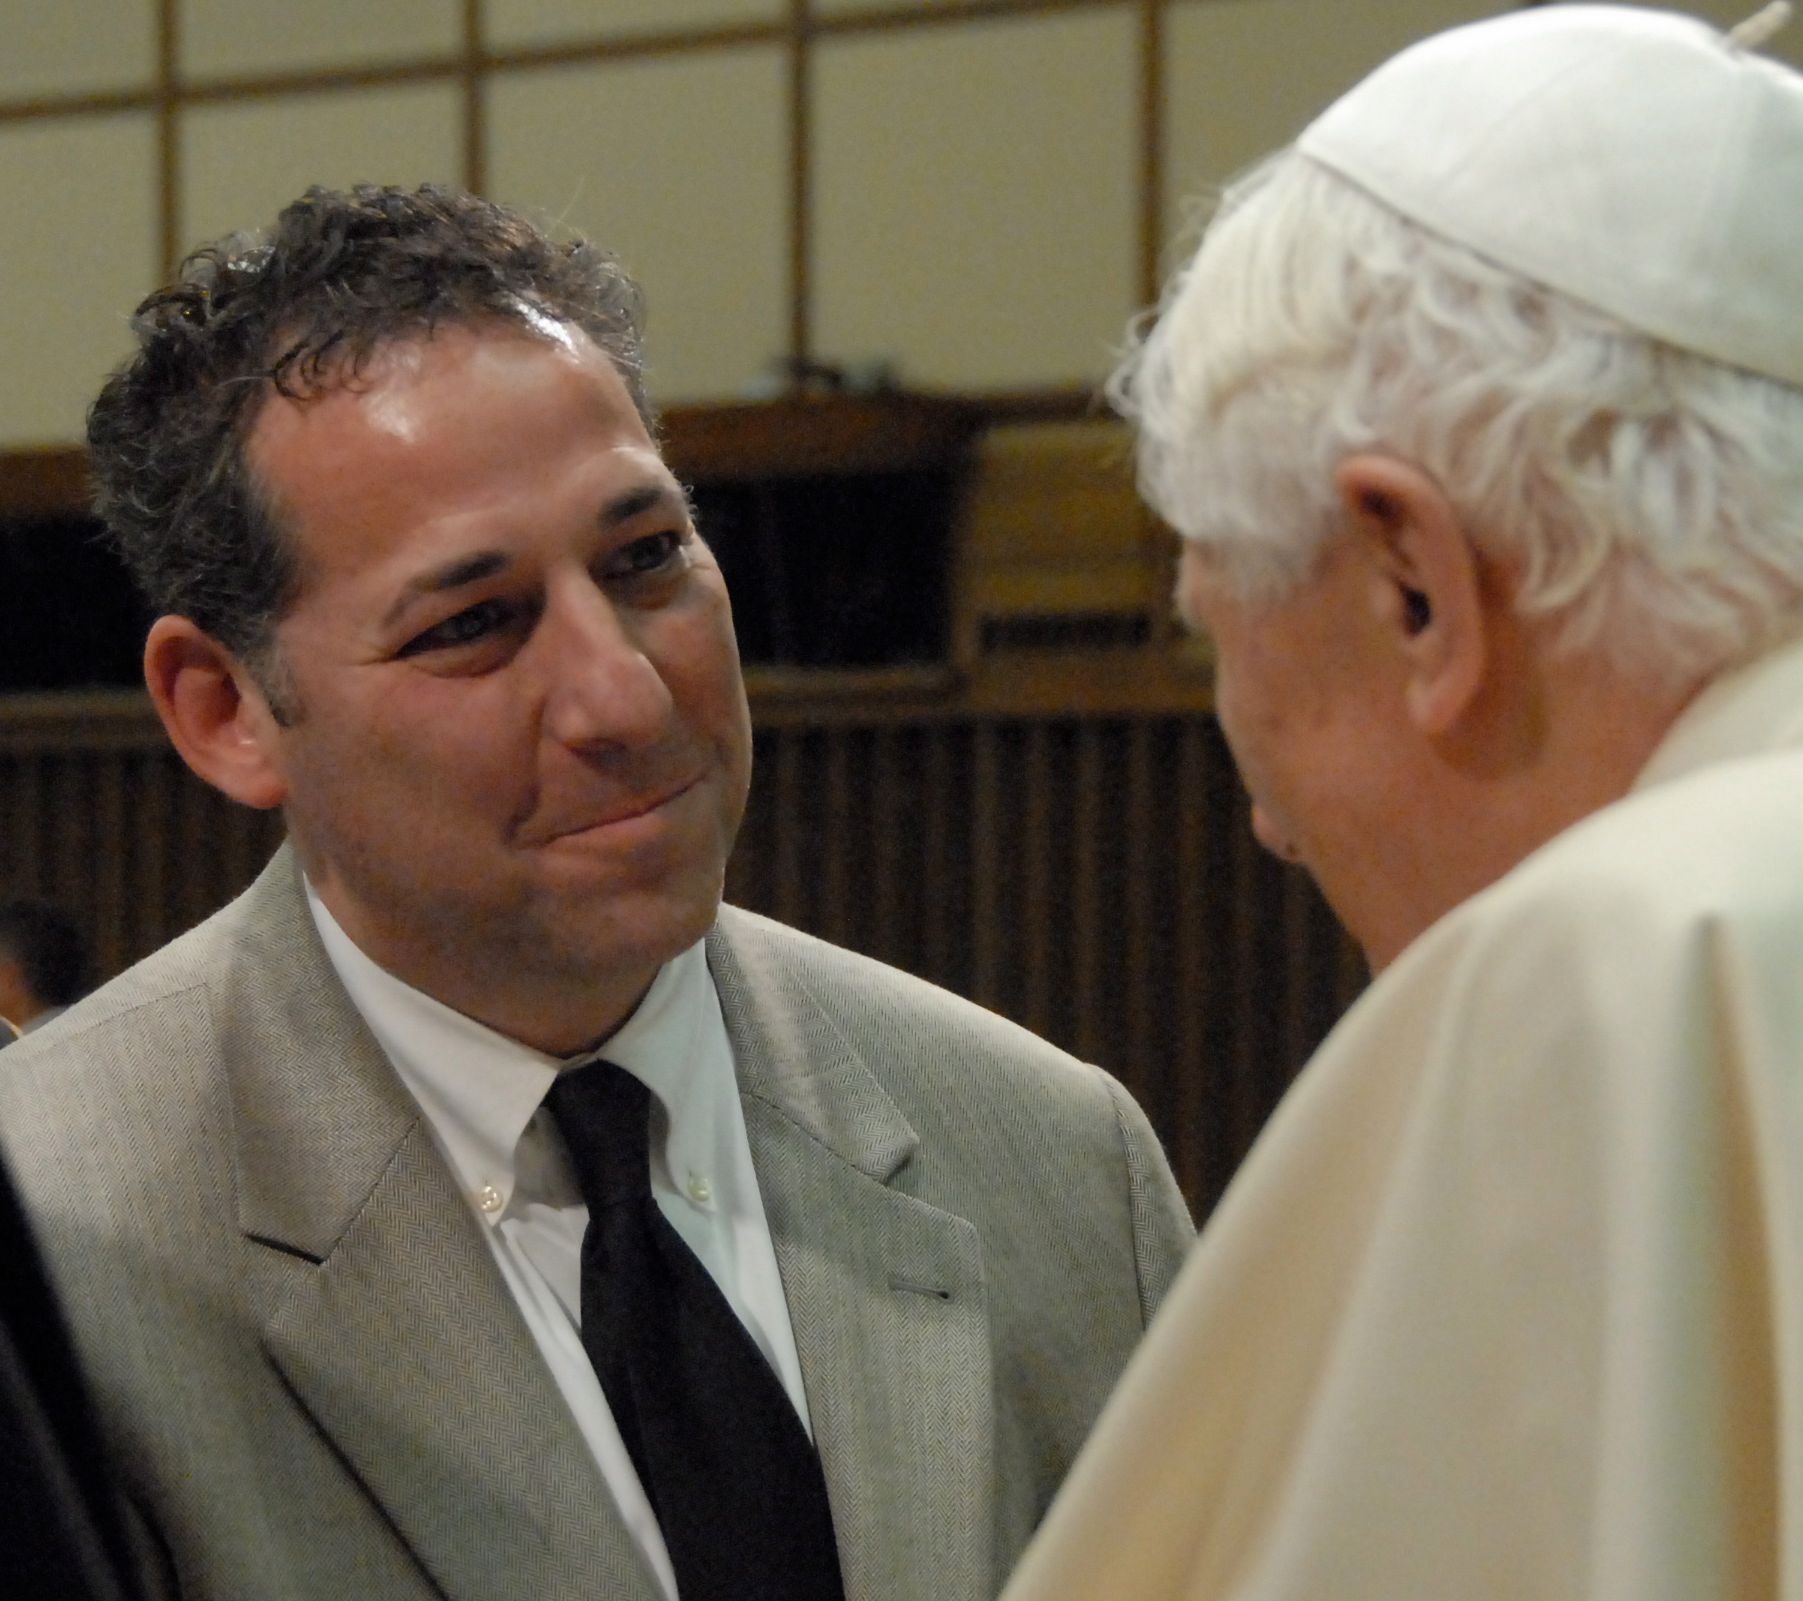 Rabbi Aaron Bisno meets Roman Catholic Pope Benedict XV